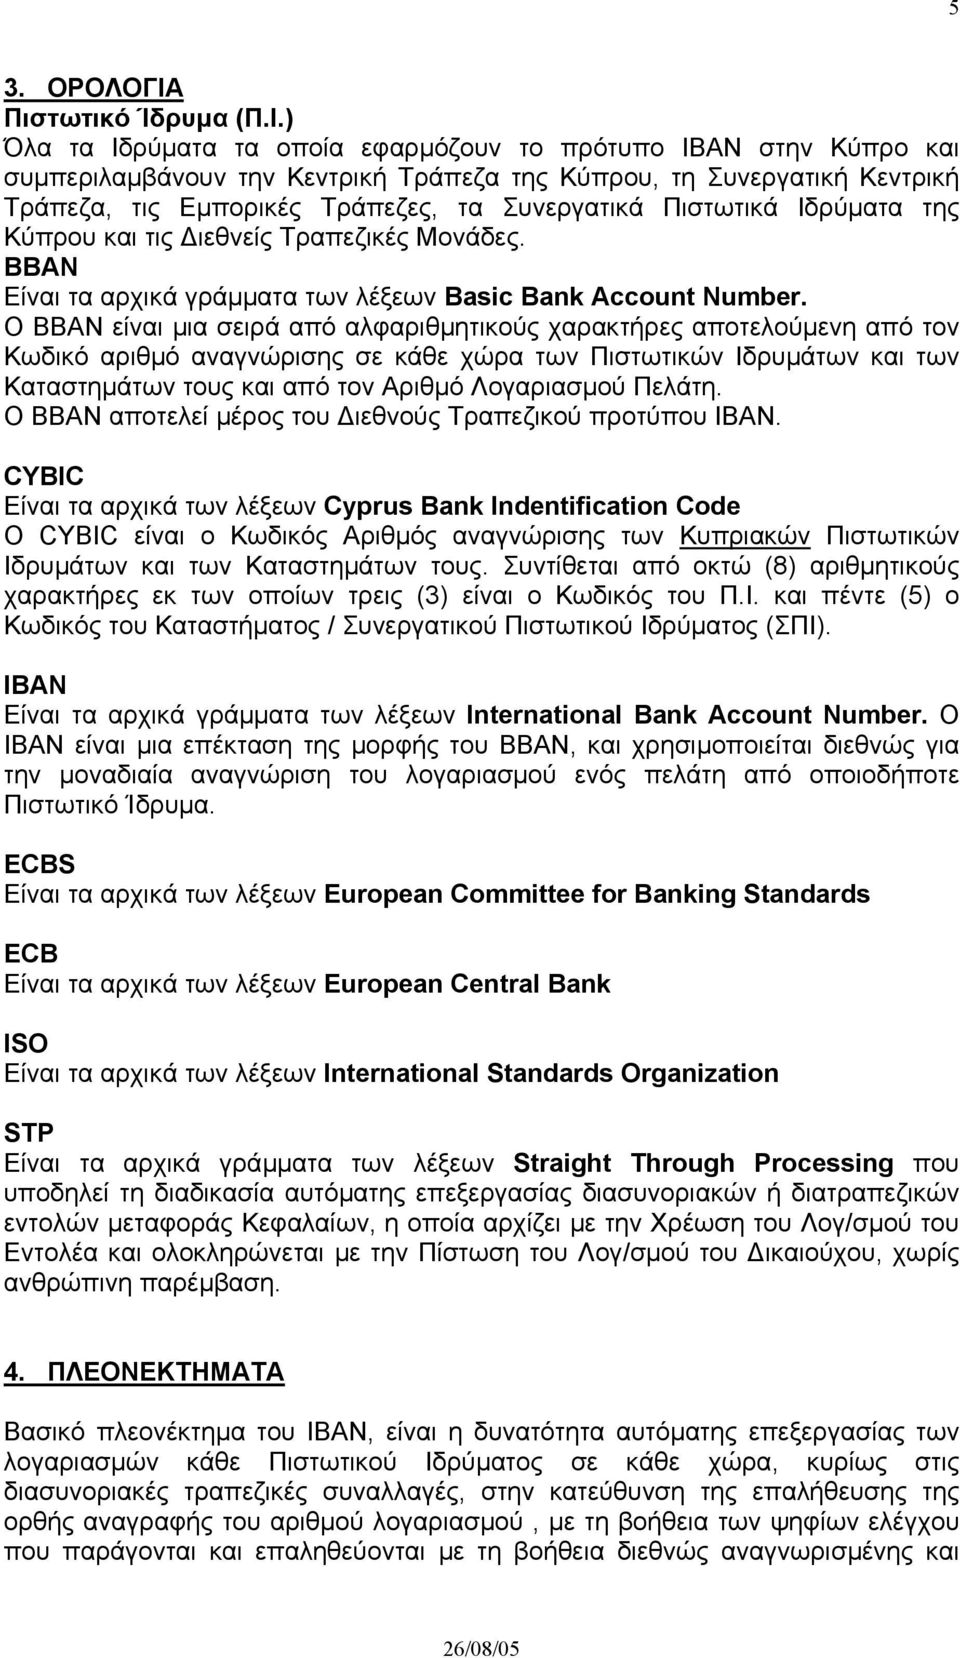 ) Όλα τα Ιδρύµατα τα οποία εφαρµόζουν το πρότυπο IBAN στην Κύπρο και συµπεριλαµβάνουν την Κεντρική Τράπεζα της Κύπρου, τη Συνεργατική Κεντρική Τράπεζα, τις Εµπορικές Τράπεζες, τα Συνεργατικά